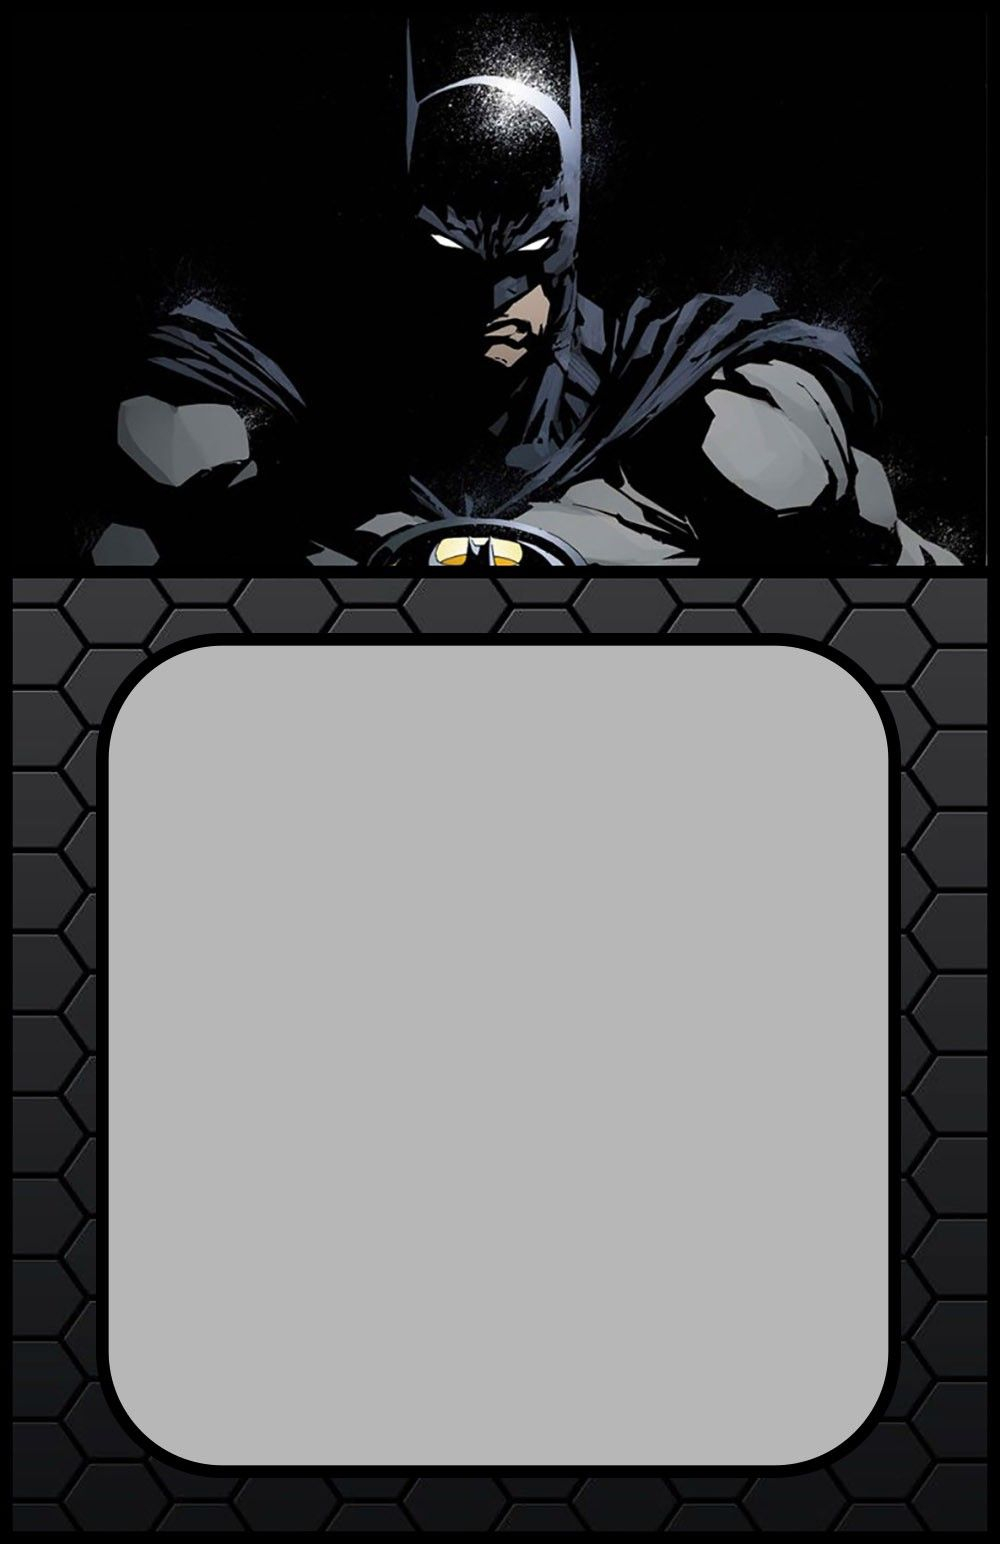 Printable Batman Invitation Card Coolest Invitation Templates in dimensions 1000 X 1544